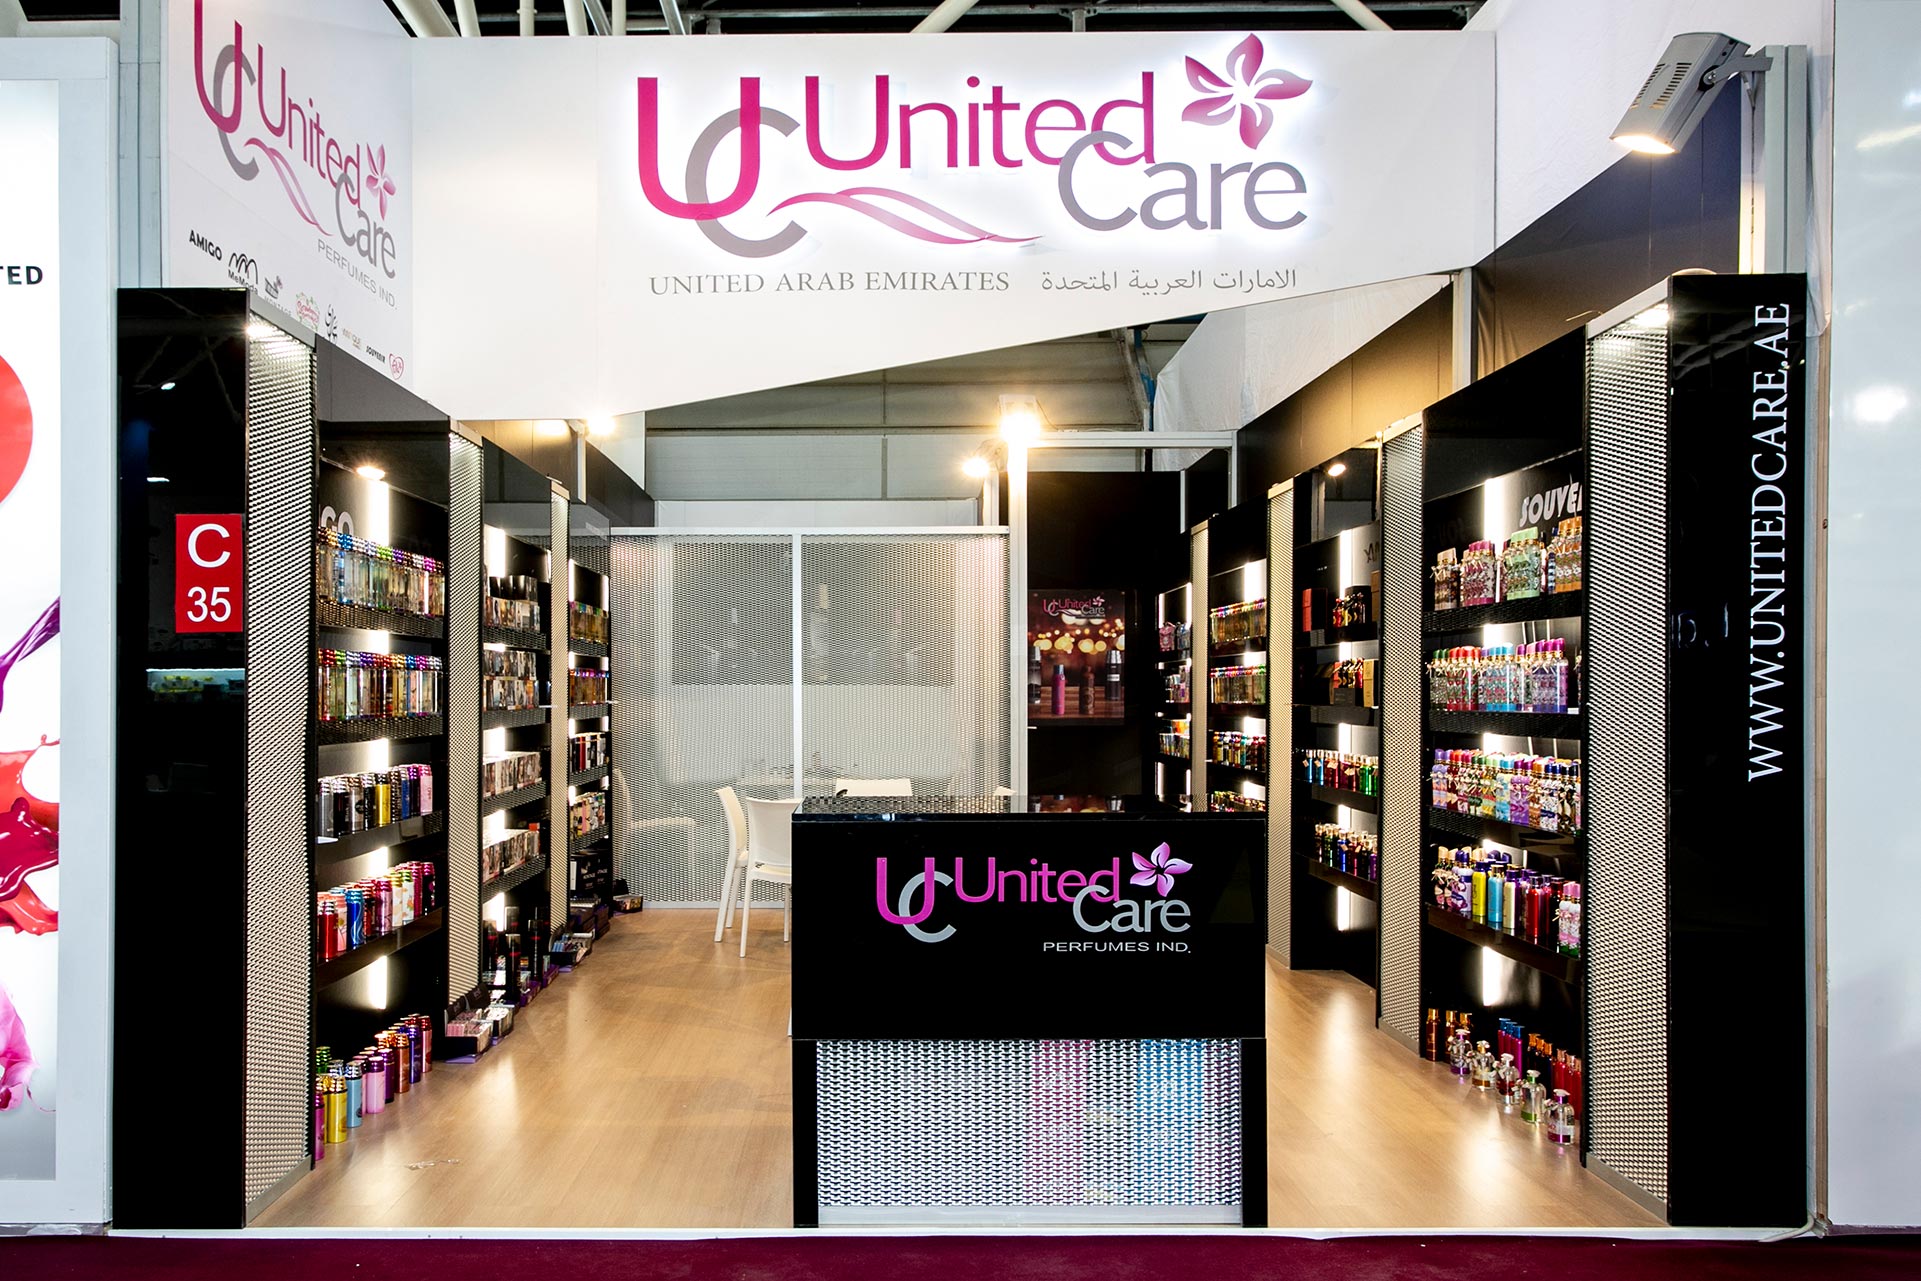 united care 001